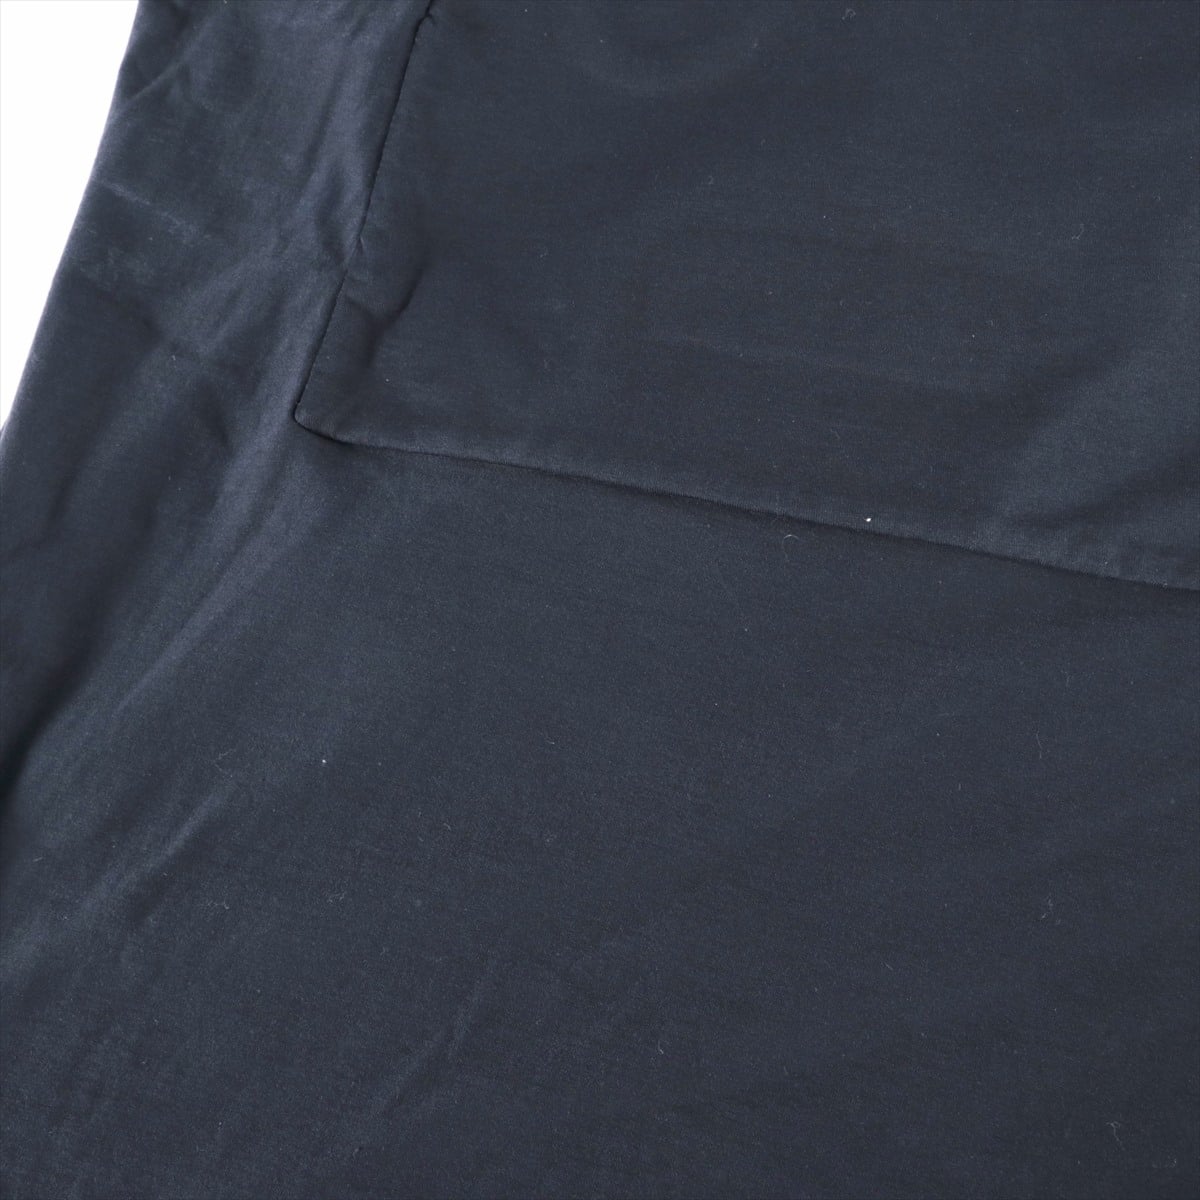 フェンディ 16年 コットン Tシャツ 50 メンズ ブラック  フェンディフェイス